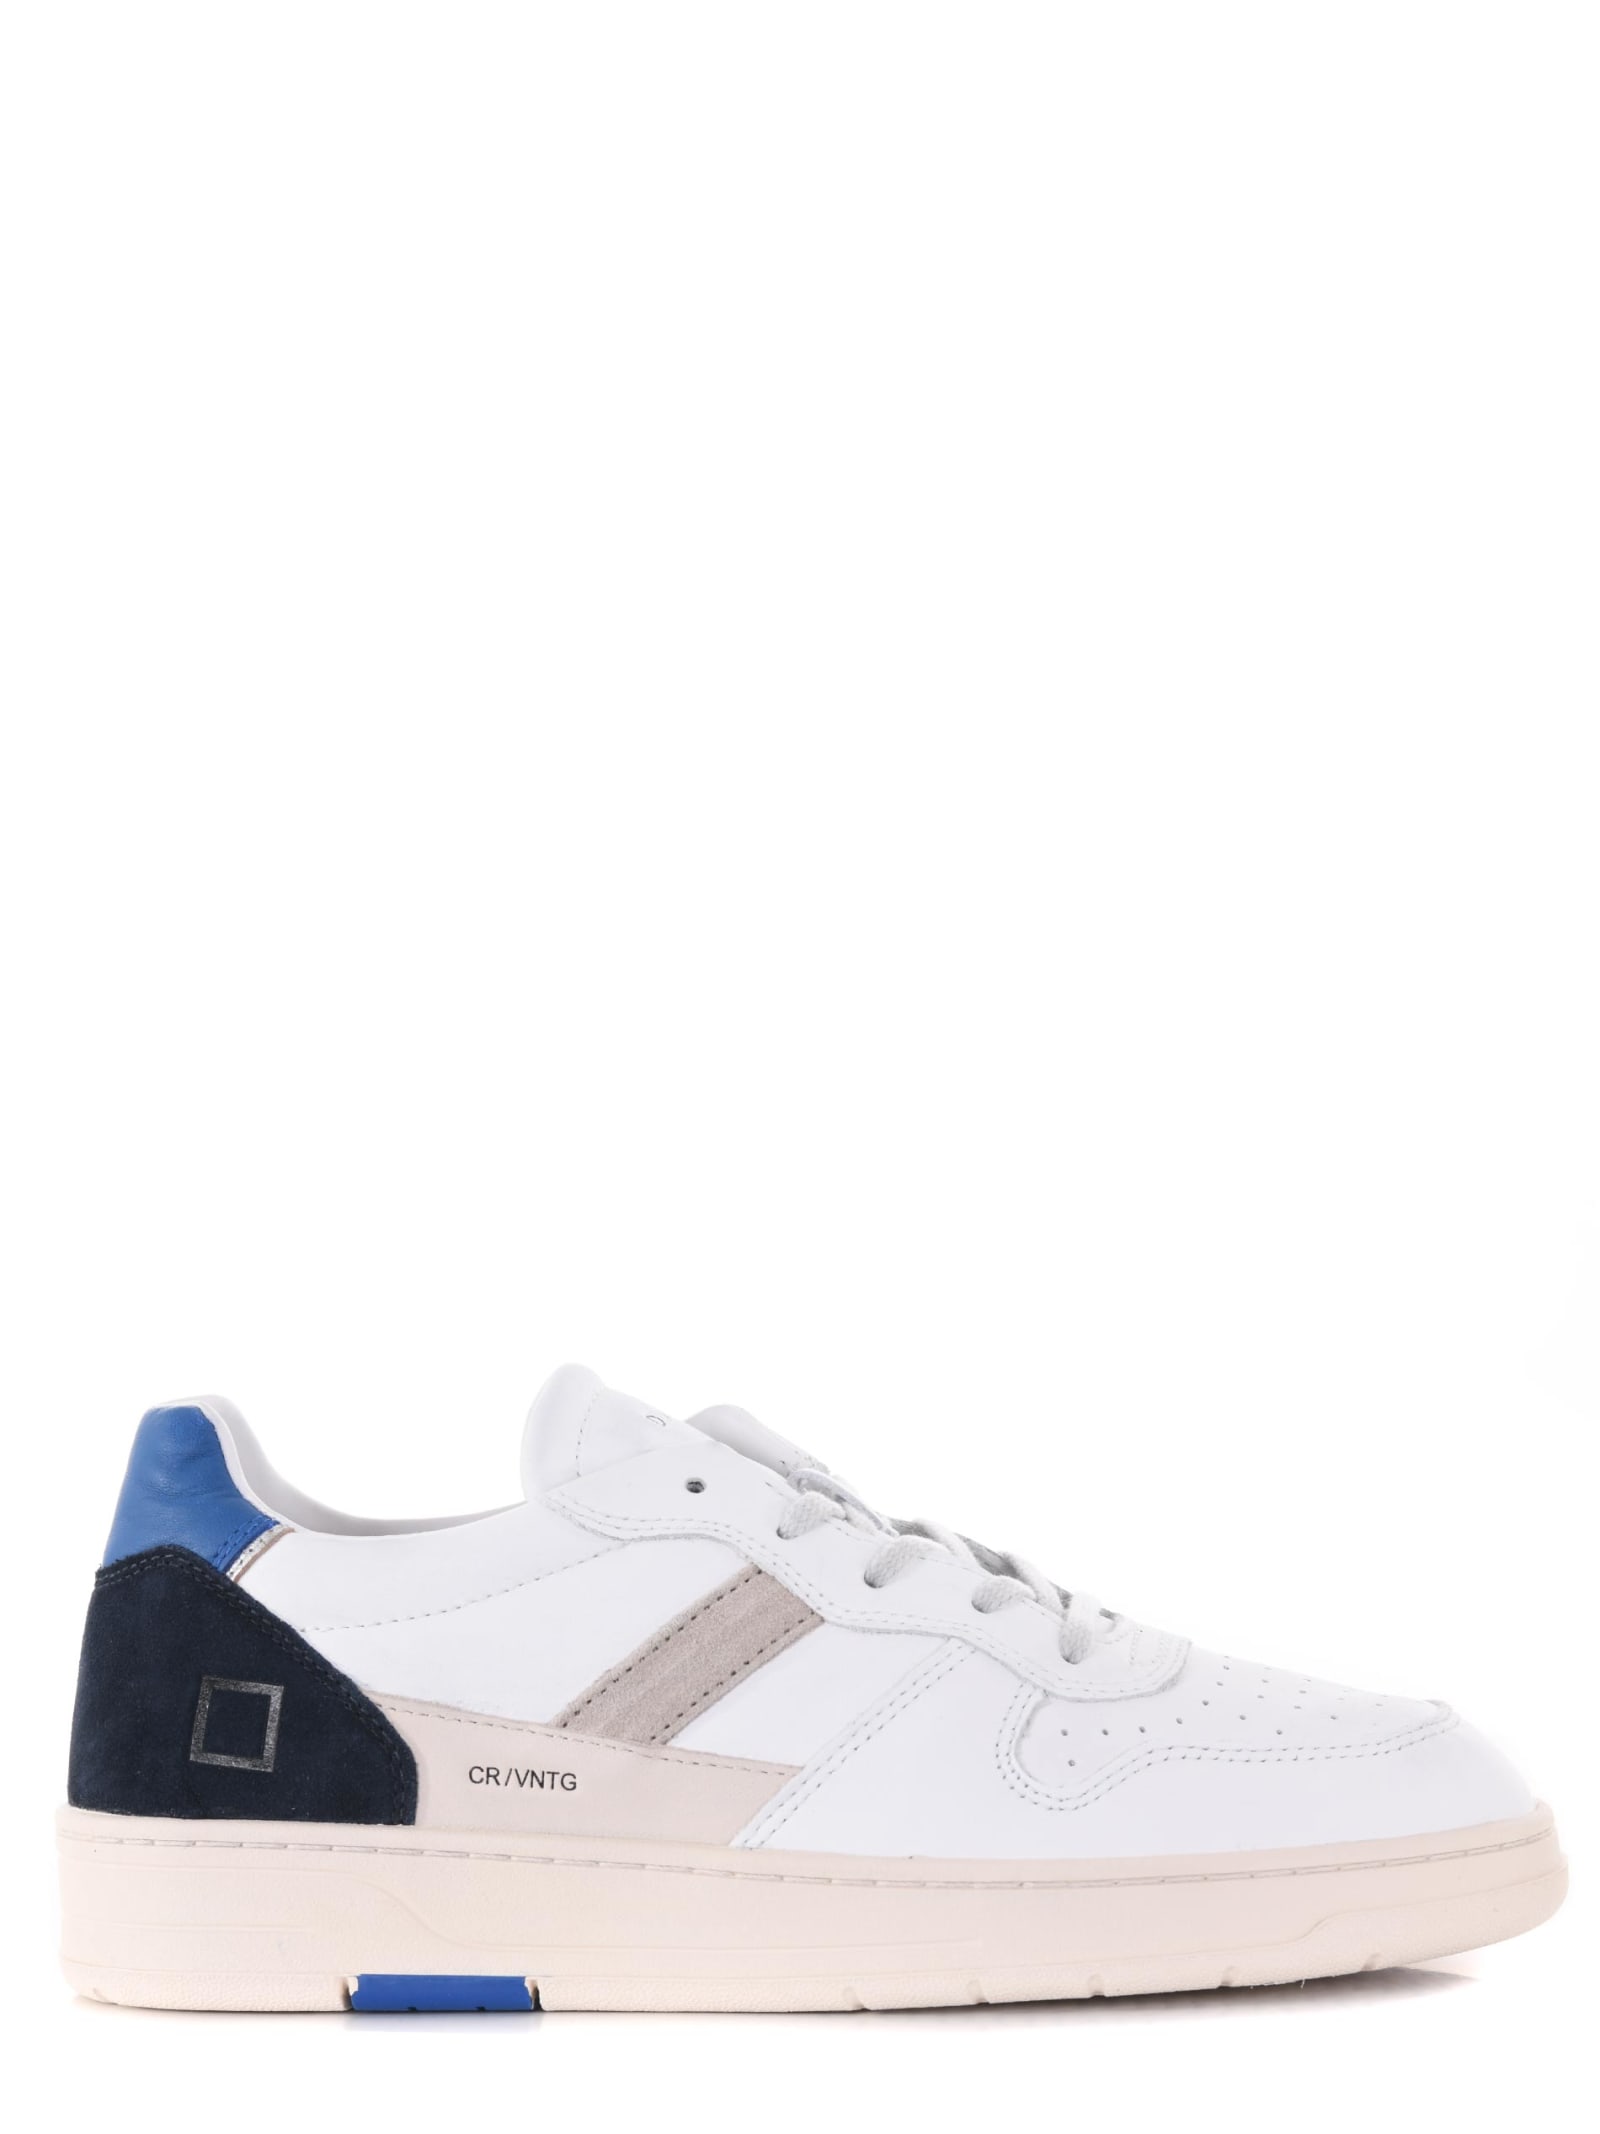 Date Mens Sneakers D.a.t.e. Court 2.0 In Bianco/blu